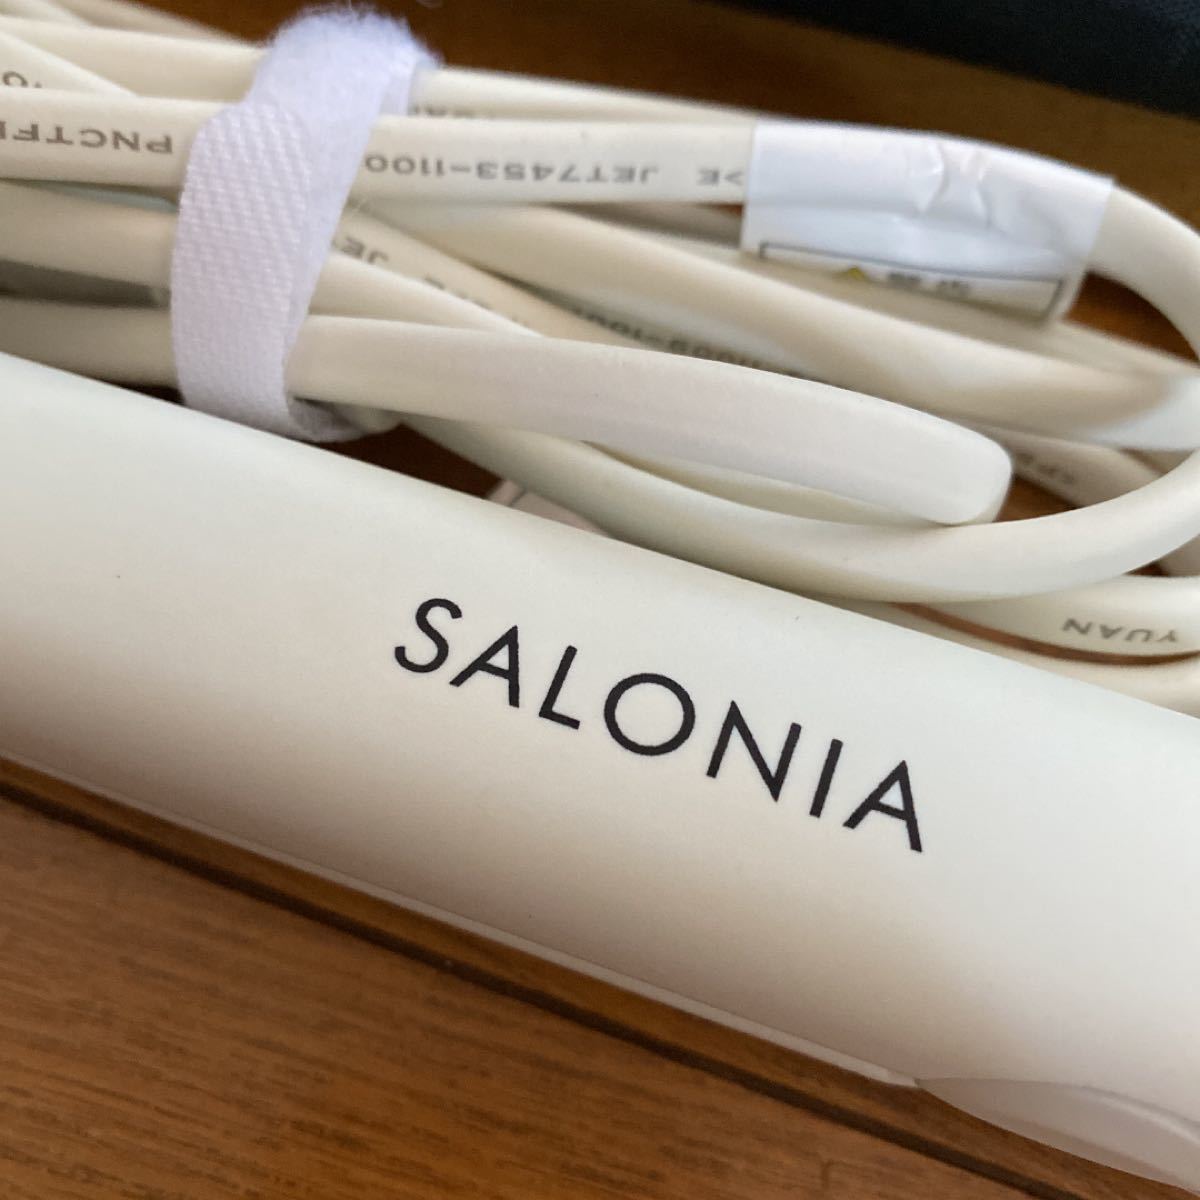 SALONIA ストレートヘアアイロン サロニア SL-004SW ヘアアイロン